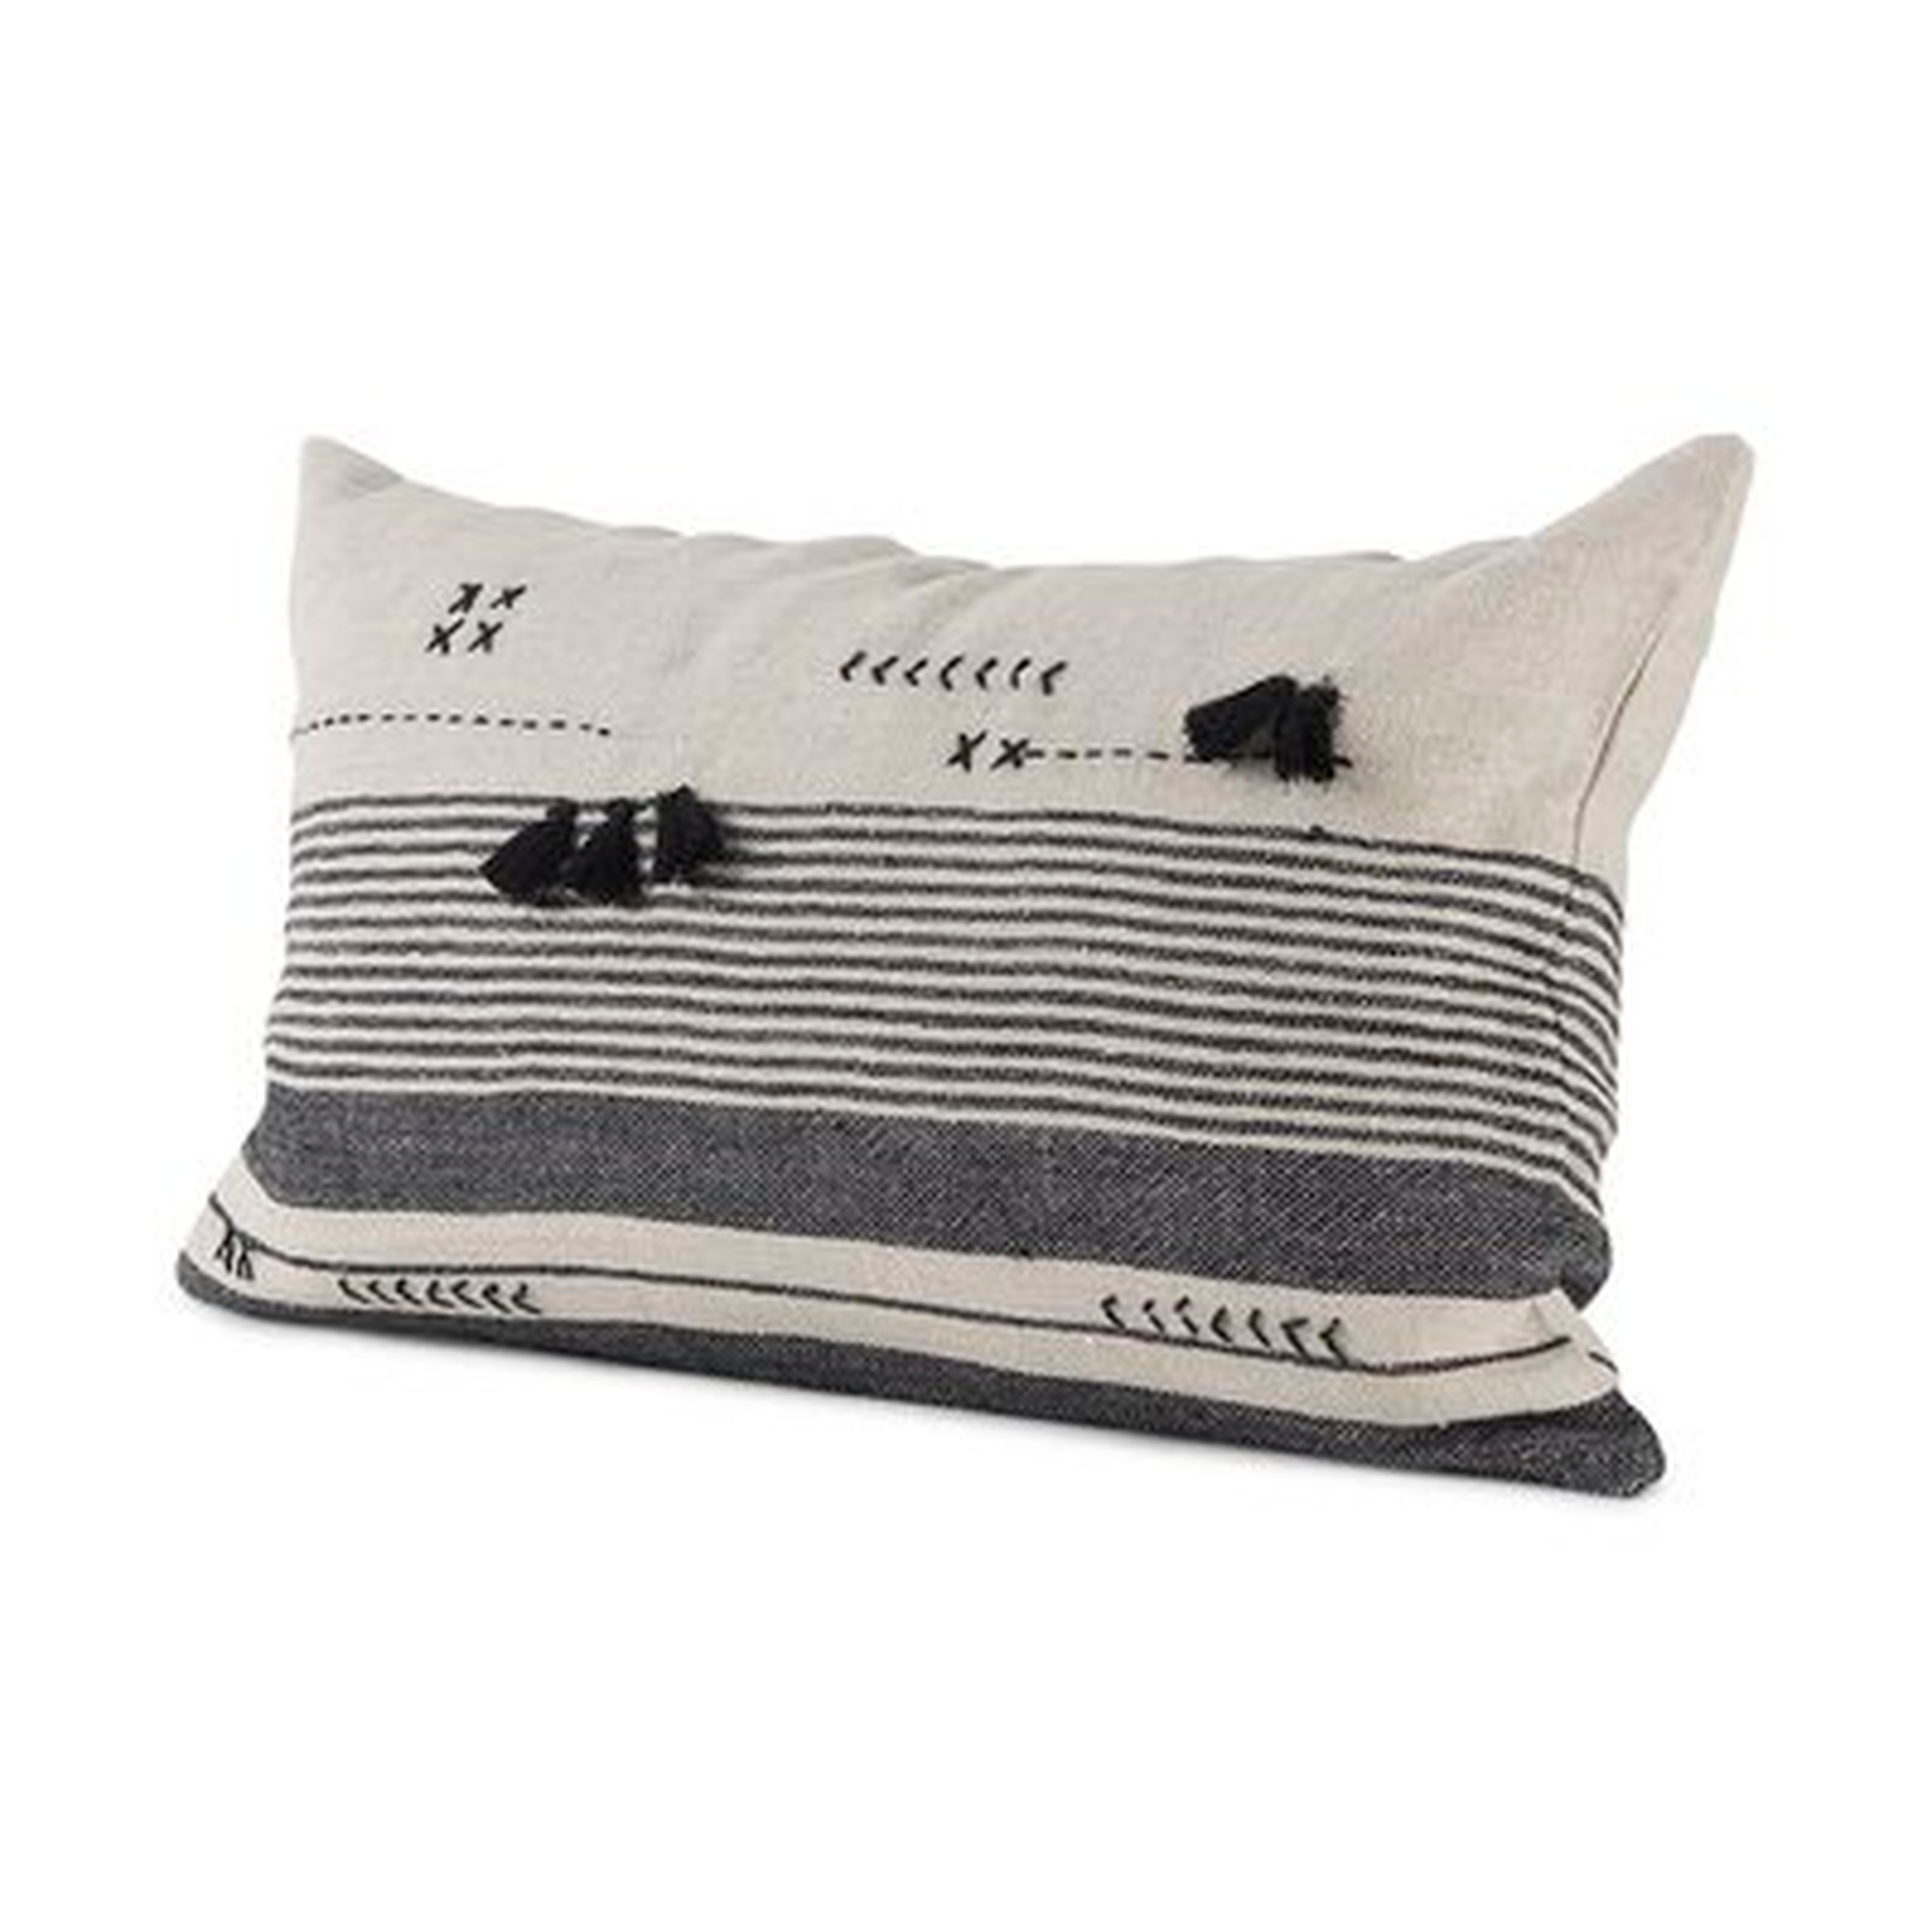 Ridgefield Rectangular Pillow Cover - Wayfair